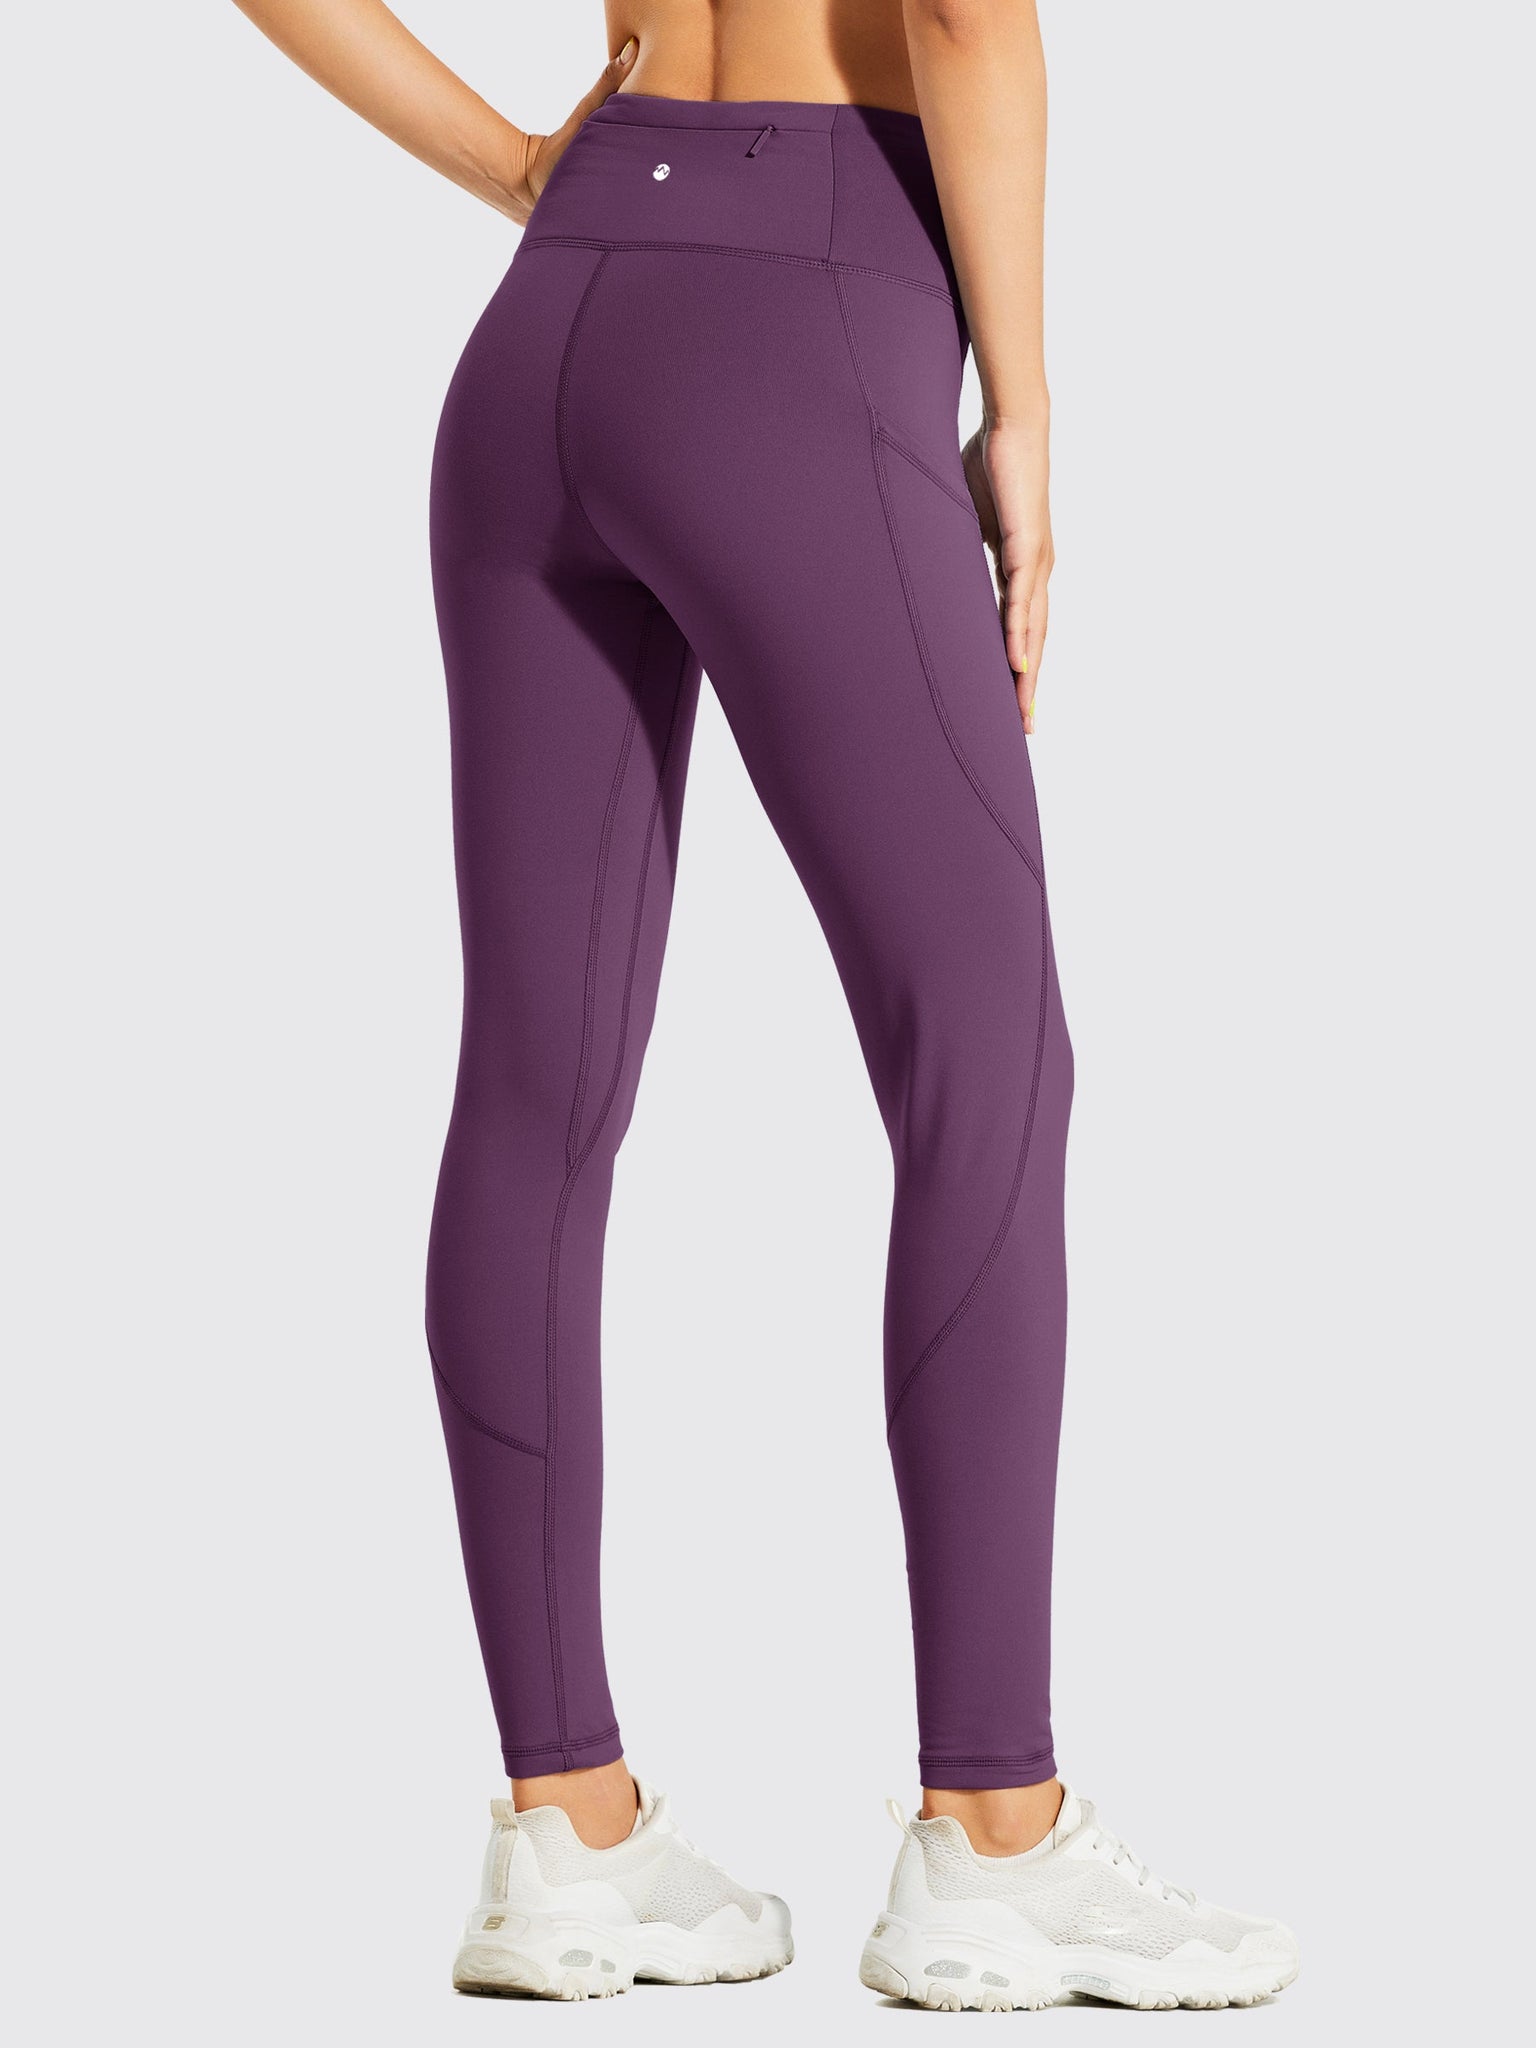 Women's Fleece Lined Leggings_Purple_model3